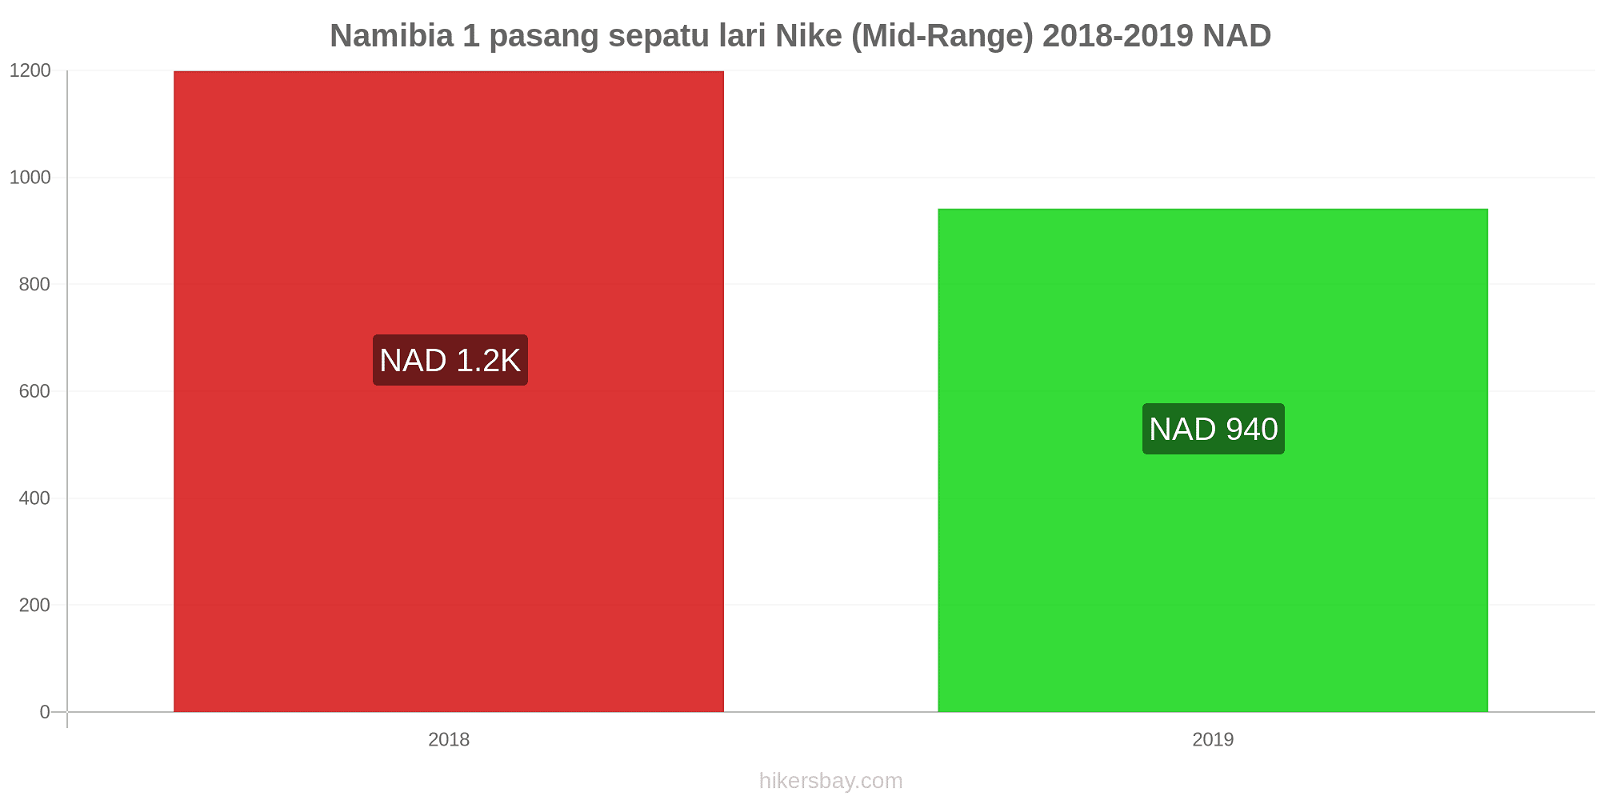 Namibia perubahan harga 1 pasang sepatu lari Nike (Mid-Range) hikersbay.com